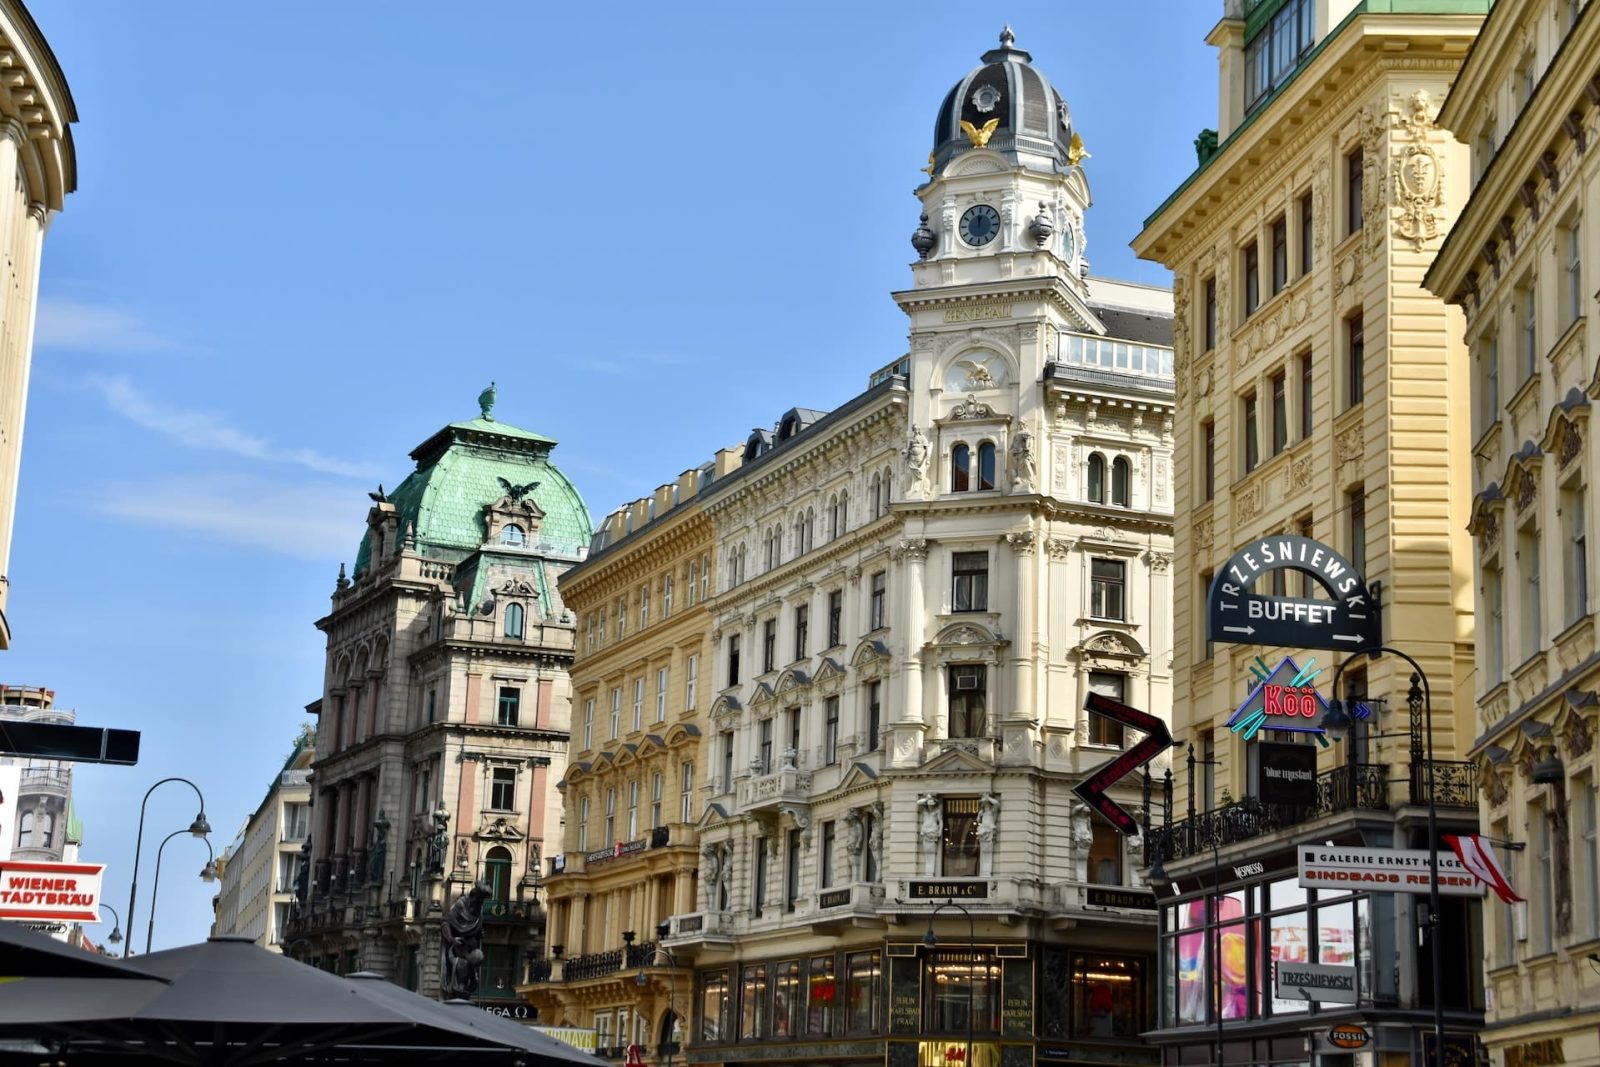 Dove alloggiare a Vienna: le migliori zone e hotel